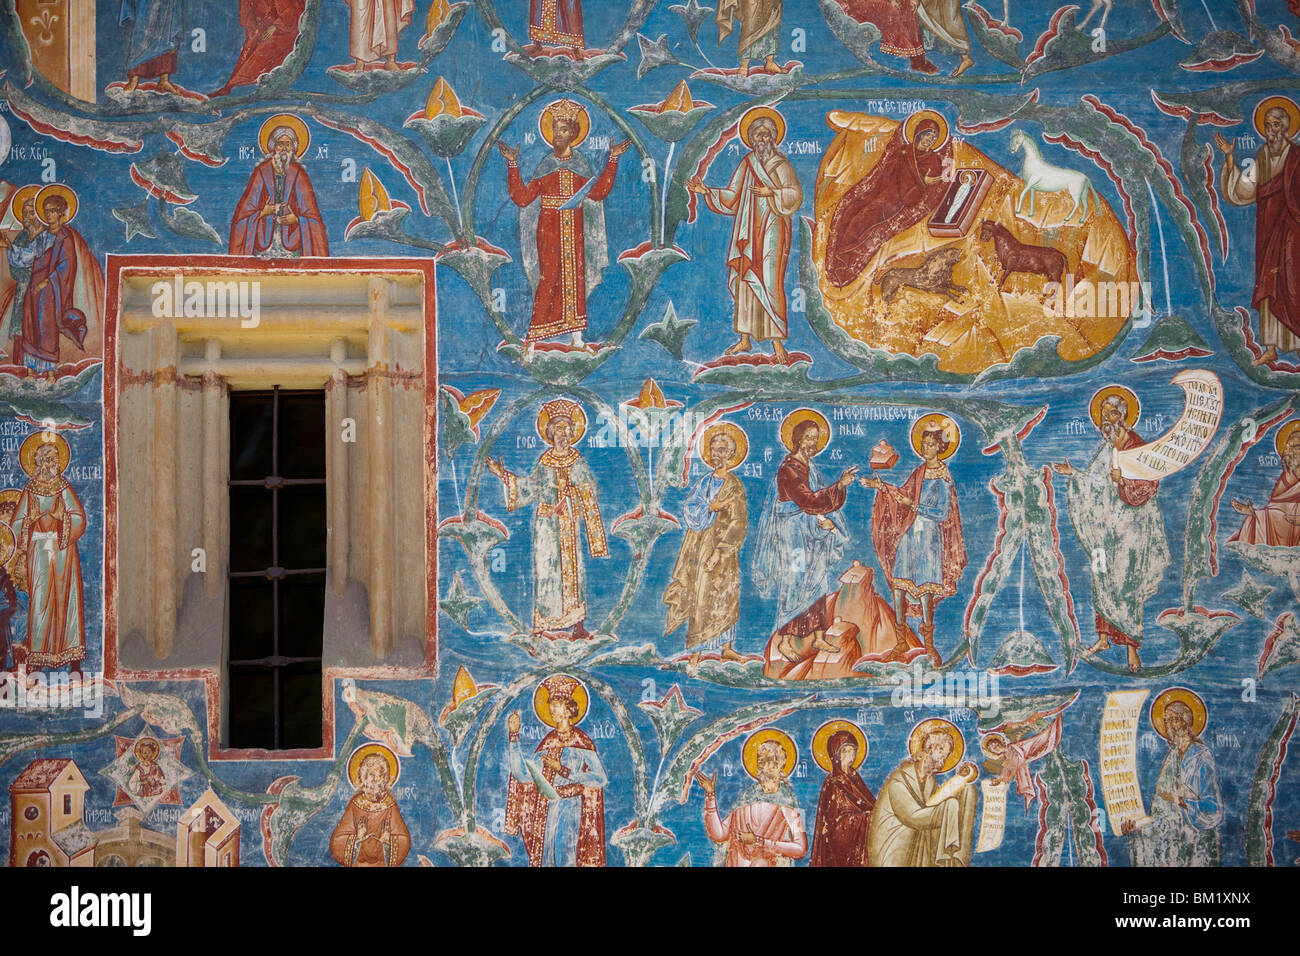 Monastère de Probota, UNESCO World Heritage Site, Dolhasca, Bucovine, Roumanie, Europe Banque D'Images